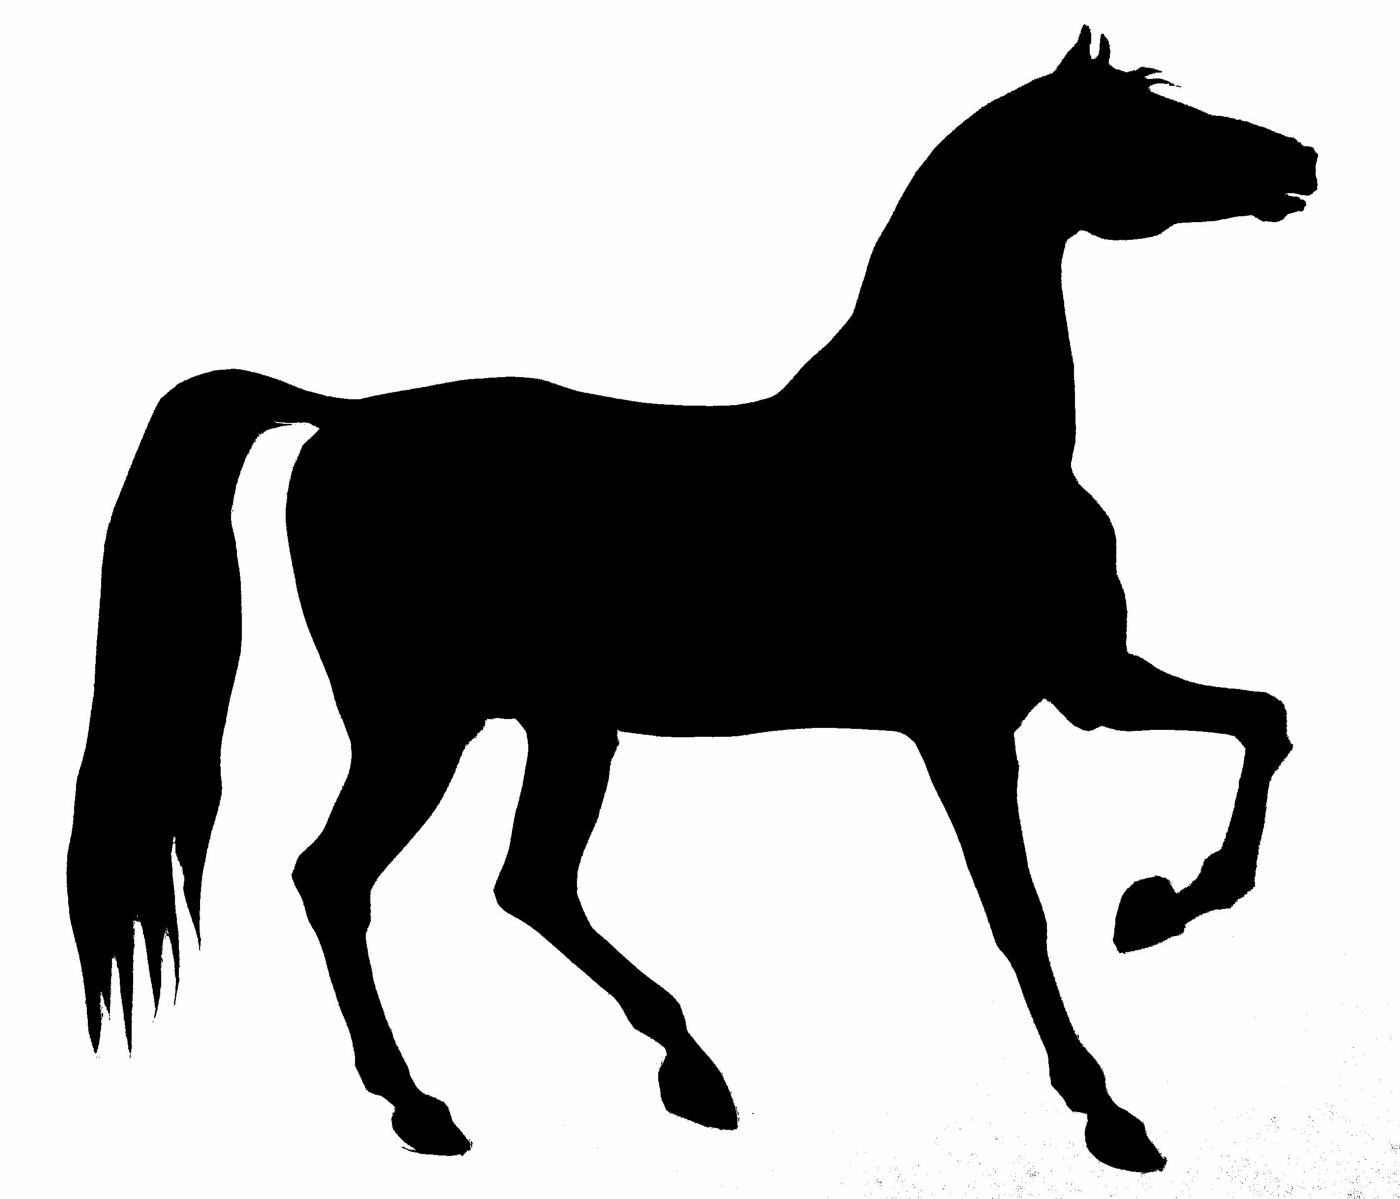 saraccino: Horse silhouette / stencil...